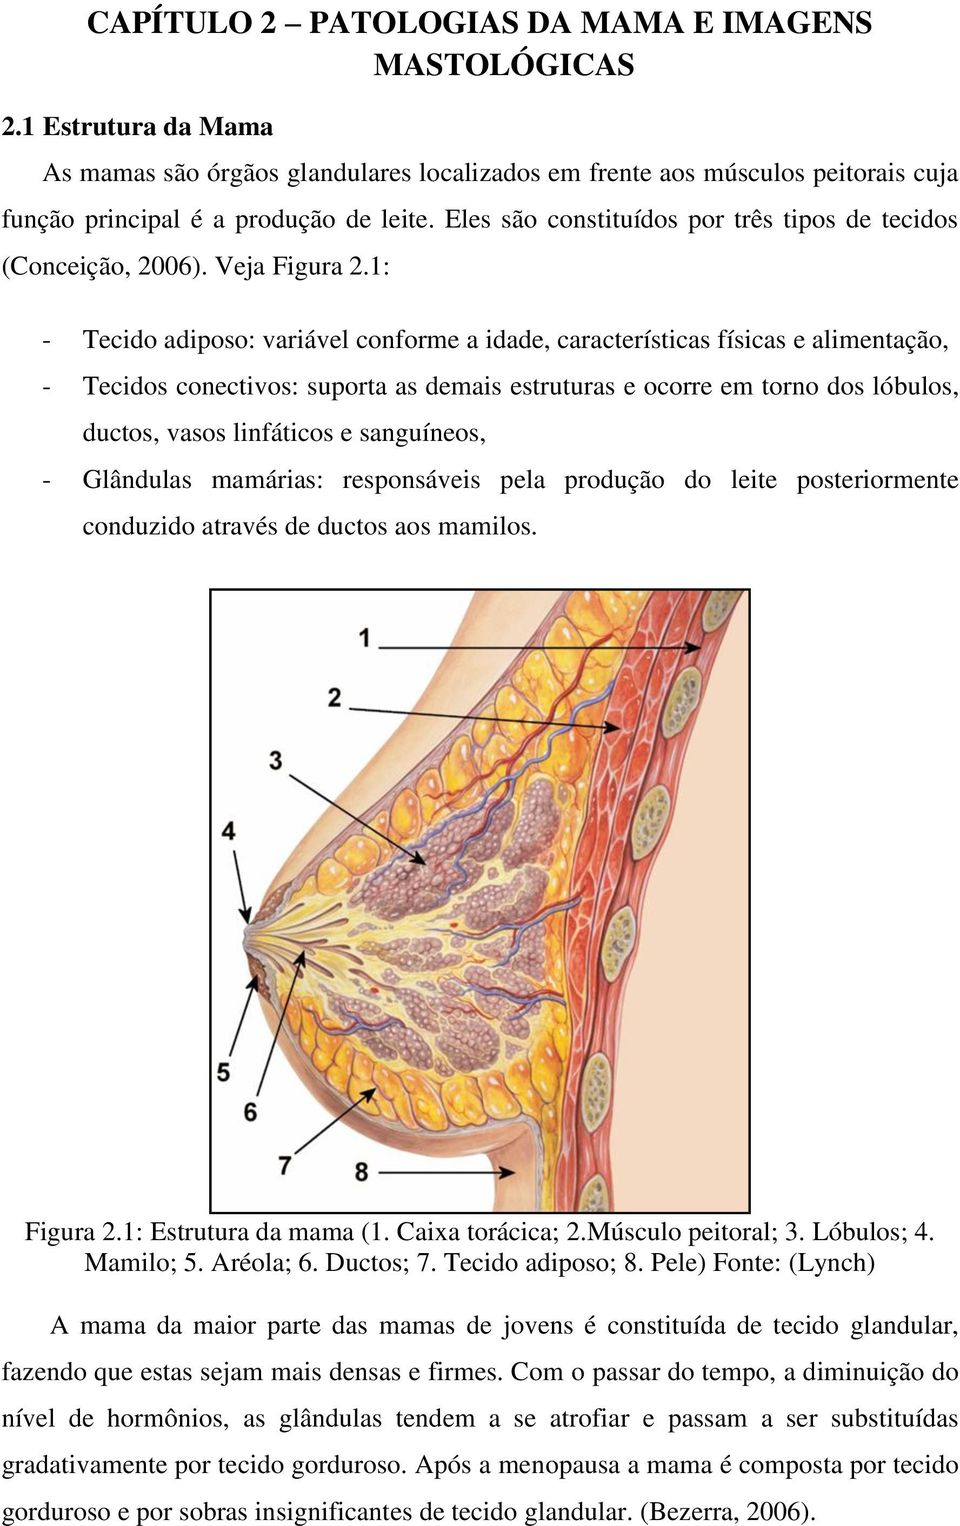 1: - Tecido adiposo: variável conforme a idade, características físicas e alimentação, - Tecidos conectivos: suporta as demais estruturas e ocorre em torno dos lóbulos, ductos, vasos linfáticos e